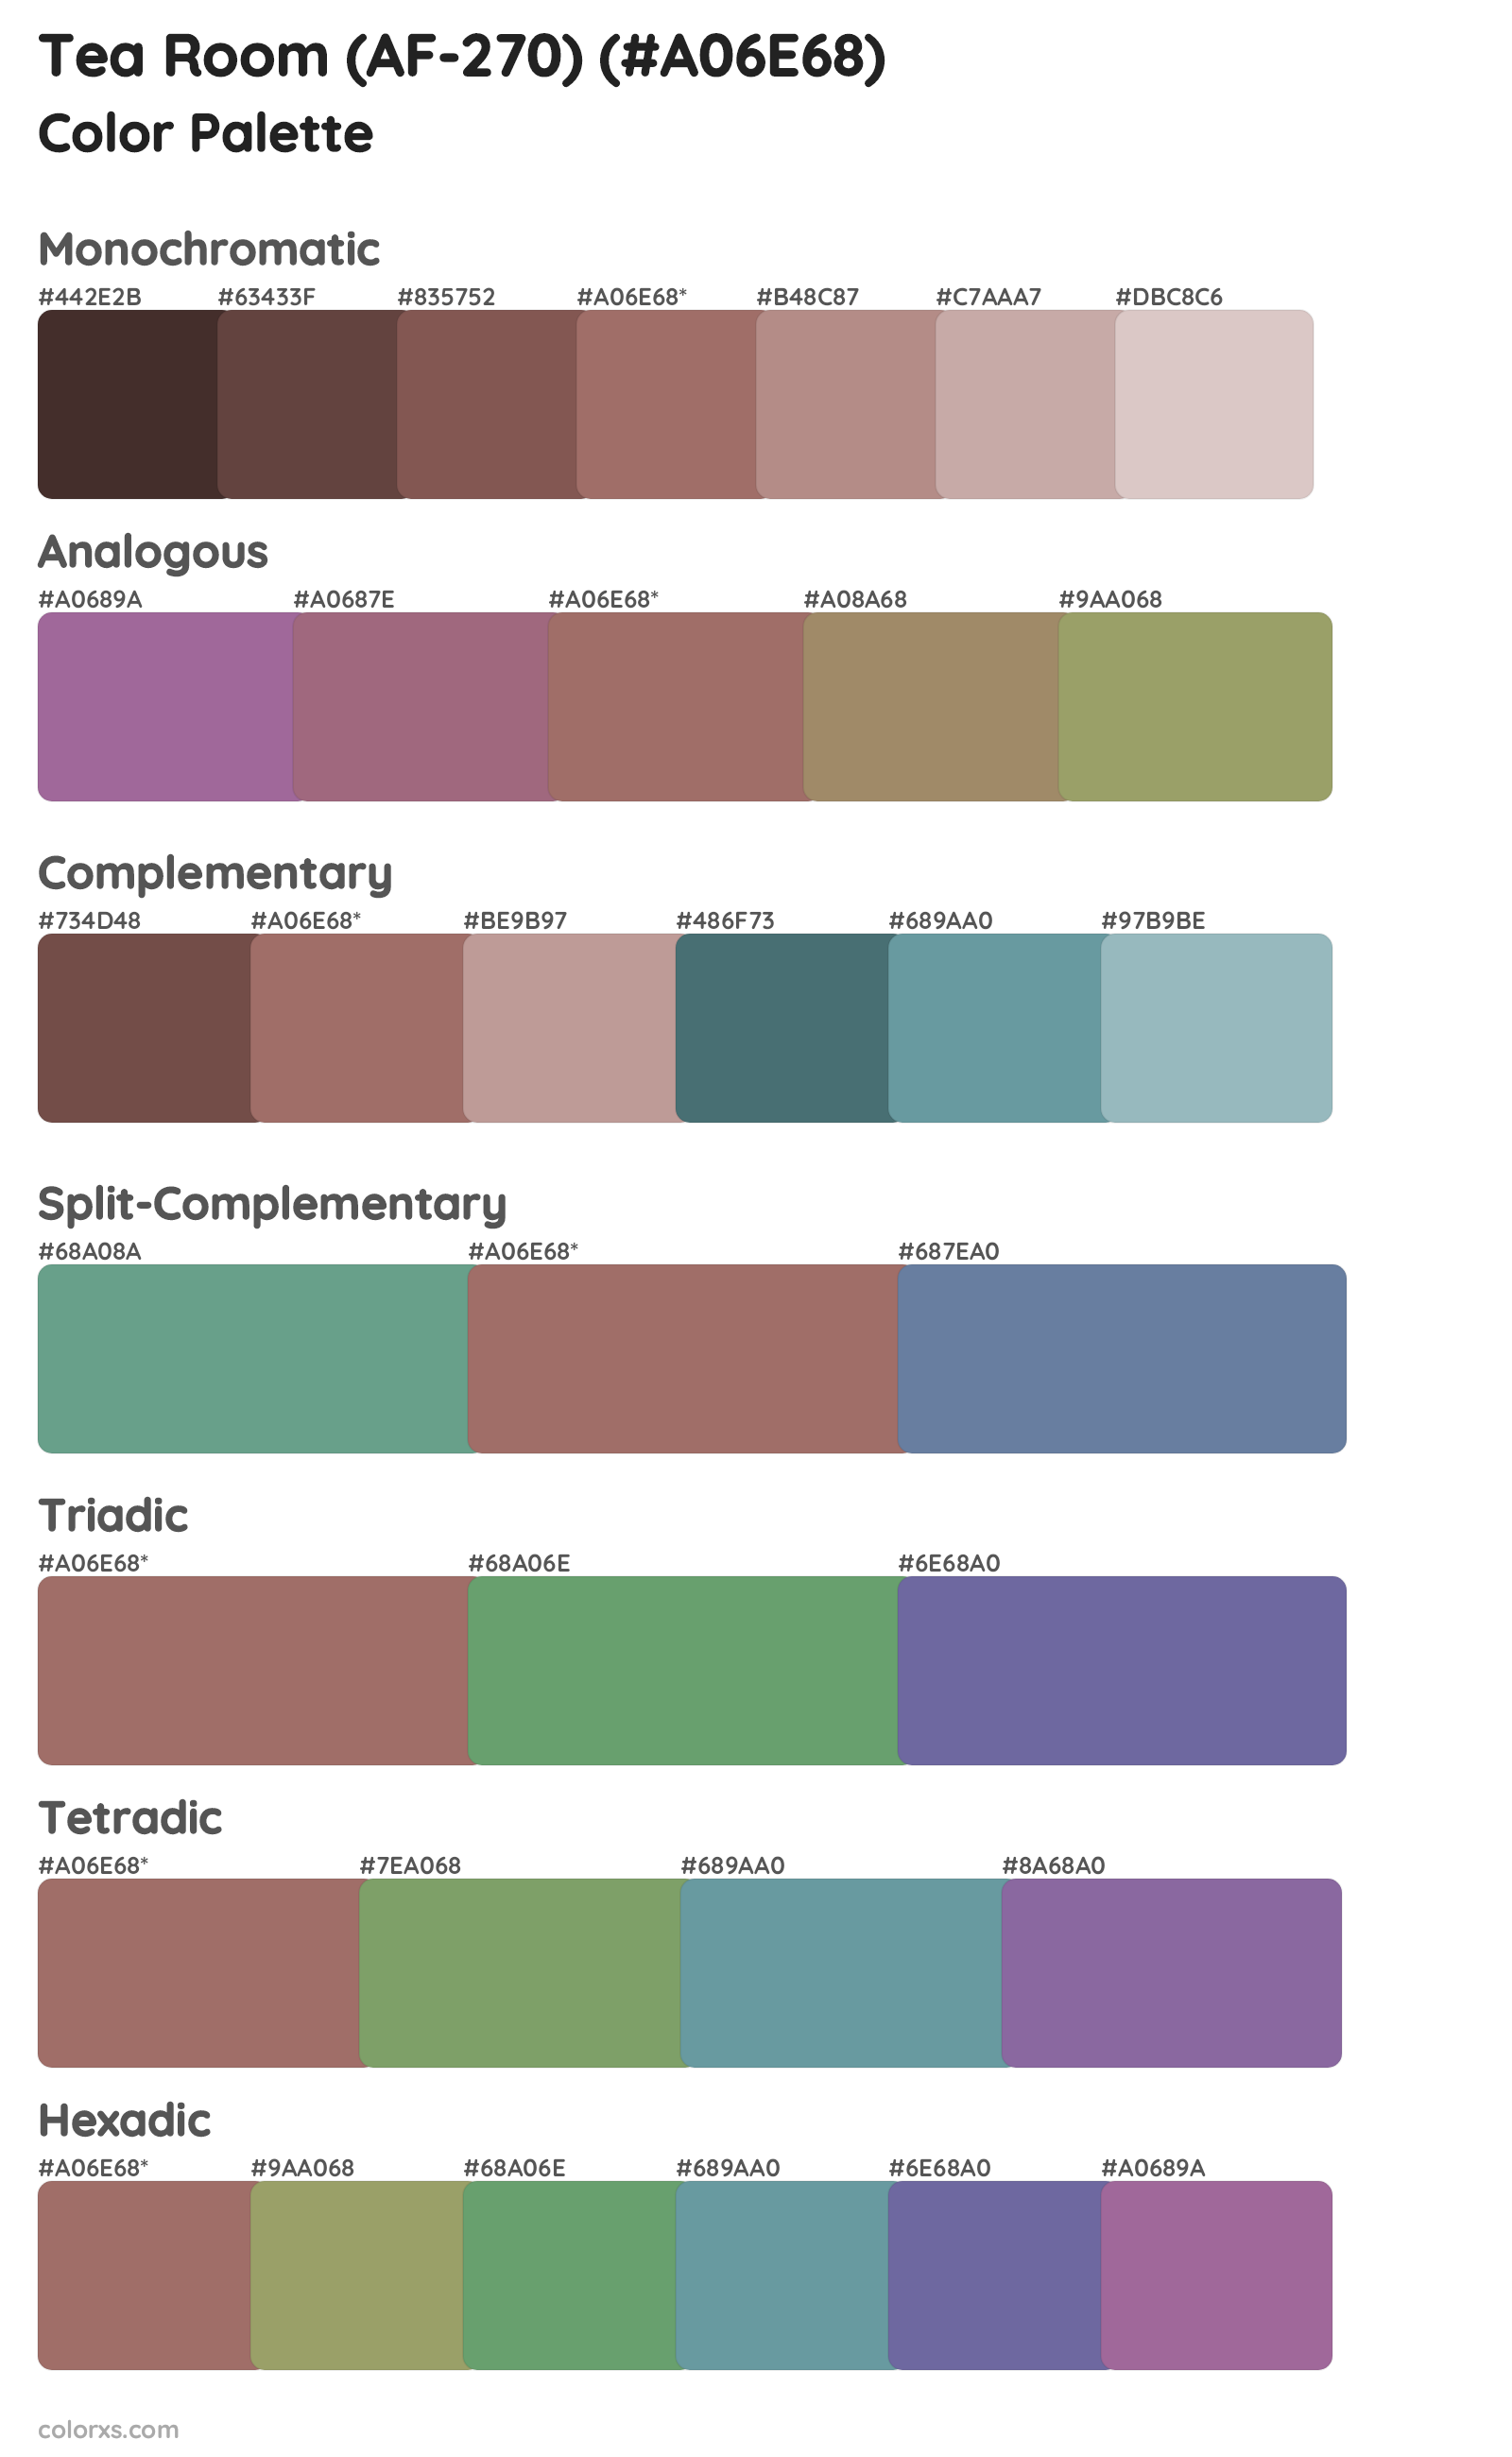 Tea Room (AF-270) Color Scheme Palettes